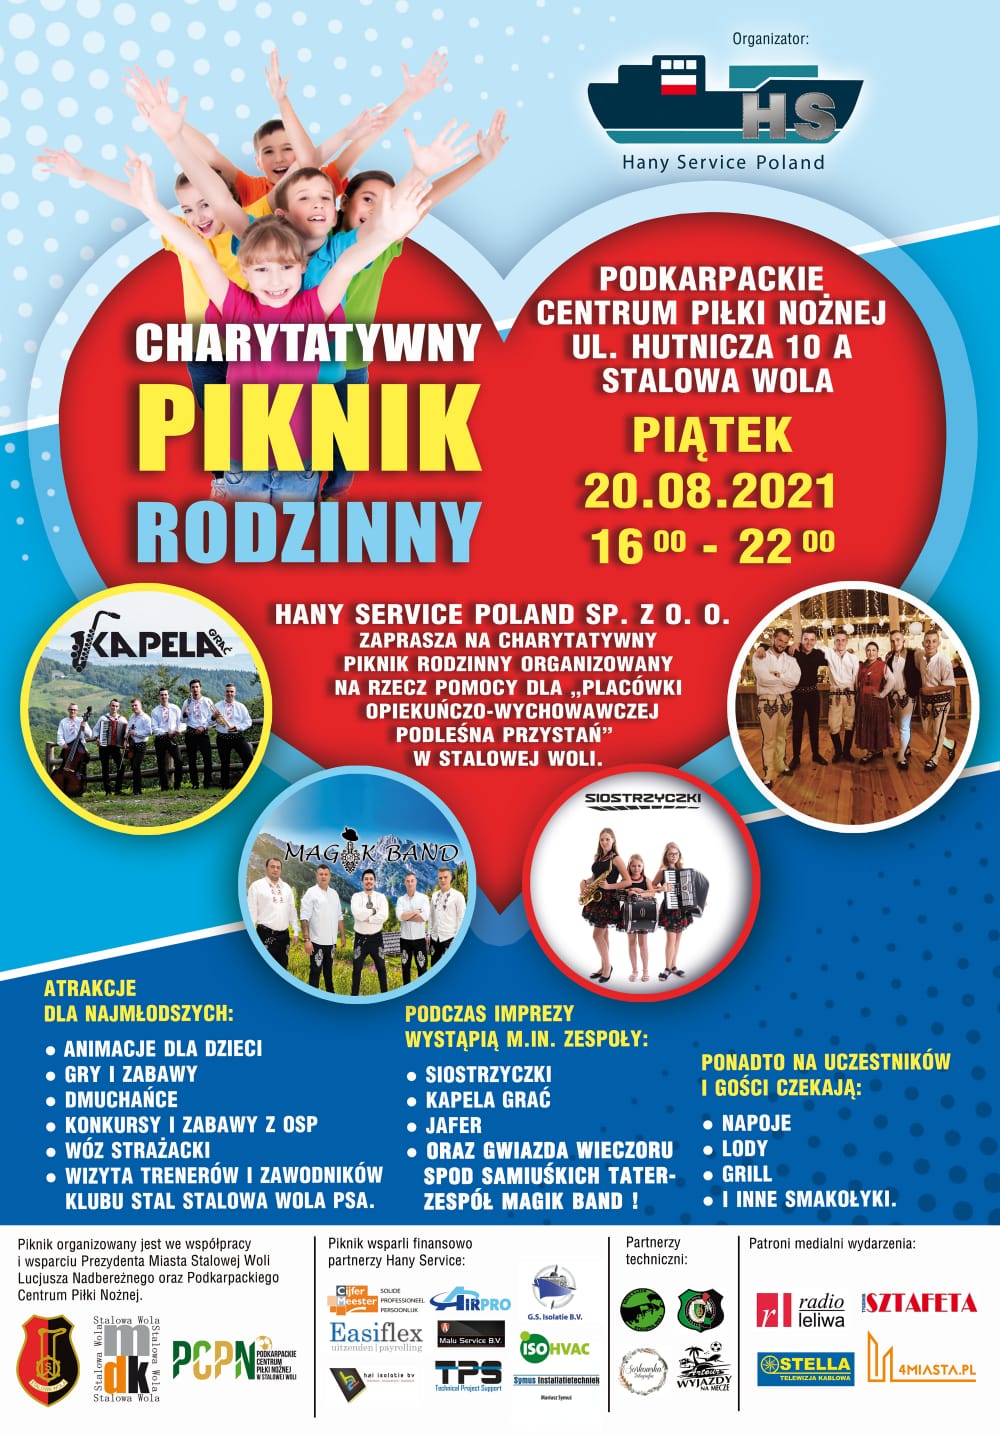 Charytatywny-Piknik-Rodzinny-20.08.2021.jpg